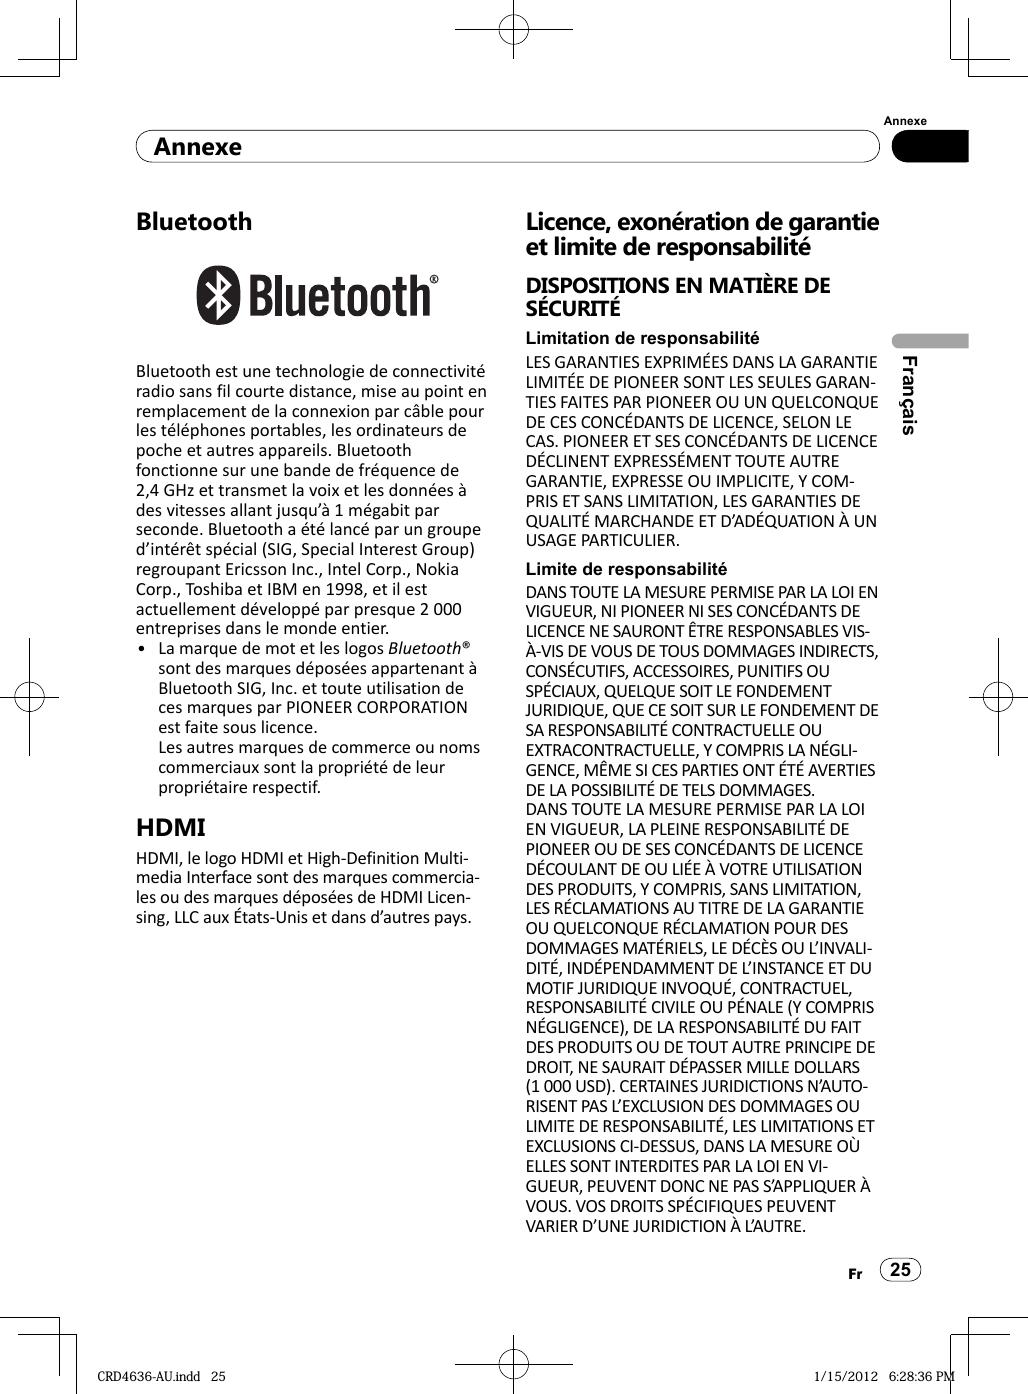 AnnexeAnnexe25FrFrançaisBluetoothBluetooth est une technologie de connectivité radio sans fil courte distance, mise au point en remplacement de la connexion par câble pour les téléphones portables, les ordinateurs de poche et autres appareils. Bluetooth fonctionne sur une bande de fréquence de 2,4 GHz et transmet la voix et les données à des vitesses allant jusqu’à 1 mégabit par seconde. Bluetooth a été lancé par un groupe d’intérêt spécial (SIG, Special Interest Group) regroupant Ericsson Inc., Intel Corp., Nokia Corp., Toshiba et IBM en 1998, et il est actuellement développé par presque 2 000 entreprises dans le monde entier.La marque de mot et les logos Bluetooth® sont des marques déposées appartenant à Bluetooth SIG, Inc. et toute utilisation de ces marques par PIONEER CORPORATION est faite sous licence.Les autres marques de commerce ou noms commerciaux sont la propriété de leur propriétaire respectif.HDMIHDMI, le logo HDMI et High-Definition Multi-media Interface sont des marques commercia-les ou des marques déposées de HDMI Licen-sing, LLC aux États-Unis et dans d’autres pays.•Licence, exonération de garantie et limite de responsabilitéDISPOSITIONS EN MATIÈRE DE SÉCURITÉLimitation de responsabilitéLES GARANTIES EXPRIMÉES DANS LA GARANTIE LIMITÉE DE PIONEER SONT LES SEULES GARAN-TIES FAITES PAR PIONEER OU UN QUELCONQUE DE CES CONCÉDANTS DE LICENCE, SELON LE CAS. PIONEER ET SES CONCÉDANTS DE LICENCE DÉCLINENT EXPRESSÉMENT TOUTE AUTRE GARANTIE, EXPRESSE OU IMPLICITE, Y COM-PRIS ET SANS LIMITATION, LES GARANTIES DE QUALITÉ MARCHANDE ET D’ADÉQUATION À UN USAGE PARTICULIER.Limite de responsabilitéDANS TOUTE LA MESURE PERMISE PAR LA LOI EN VIGUEUR, NI PIONEER NI SES CONCÉDANTS DE LICENCE NE SAURONT ÊTRE RESPONSABLES VIS-À-VIS DE VOUS DE TOUS DOMMAGES INDIRECTS, CONSÉCUTIFS, ACCESSOIRES, PUNITIFS OU SPÉCIAUX, QUELQUE SOIT LE FONDEMENT JURIDIQUE, QUE CE SOIT SUR LE FONDEMENT DE SA RESPONSABILITÉ CONTRACTUELLE OU EXTRACONTRACTUELLE, Y COMPRIS LA NÉGLI-GENCE, MÊME SI CES PARTIES ONT ÉTÉ AVERTIES DE LA POSSIBILITÉ DE TELS DOMMAGES.DANS TOUTE LA MESURE PERMISE PAR LA LOI EN VIGUEUR, LA PLEINE RESPONSABILITÉ DE PIONEER OU DE SES CONCÉDANTS DE LICENCE DÉCOULANT DE OU LIÉE À VOTRE UTILISATION DES PRODUITS, Y COMPRIS, SANS LIMITATION, LES RÉCLAMATIONS AU TITRE DE LA GARANTIE OU QUELCONQUE RÉCLAMATION POUR DES DOMMAGES MATÉRIELS, LE DÉCÈS OU L’INVALI-DITÉ, INDÉPENDAMMENT DE L’INSTANCE ET DU MOTIF JURIDIQUE INVOQUÉ, CONTRACTUEL, RESPONSABILITÉ CIVILE OU PÉNALE (Y COMPRIS NÉGLIGENCE), DE LA RESPONSABILITÉ DU FAIT DES PRODUITS OU DE TOUT AUTRE PRINCIPE DE DROIT, NE SAURAIT DÉPASSER MILLE DOLLARS (1 000 USD). CERTAINES JURIDICTIONS N’AUTO-RISENT PAS L’EXCLUSION DES DOMMAGES OU LIMITE DE RESPONSABILITÉ, LES LIMITATIONS ET EXCLUSIONS CI-DESSUS, DANS LA MESURE OÙ ELLES SONT INTERDITES PAR LA LOI EN VI-GUEUR, PEUVENT DONC NE PAS S’APPLIQUER À VOUS. VOS DROITS SPÉCIFIQUES PEUVENT VARIER D’UNE JURIDICTION À L’AUTRE.CRD4636-AU.indd   25CRD4636-AU.indd   25 1/15/2012   6:28:36 PM1/15/2012   6:28:36 PM